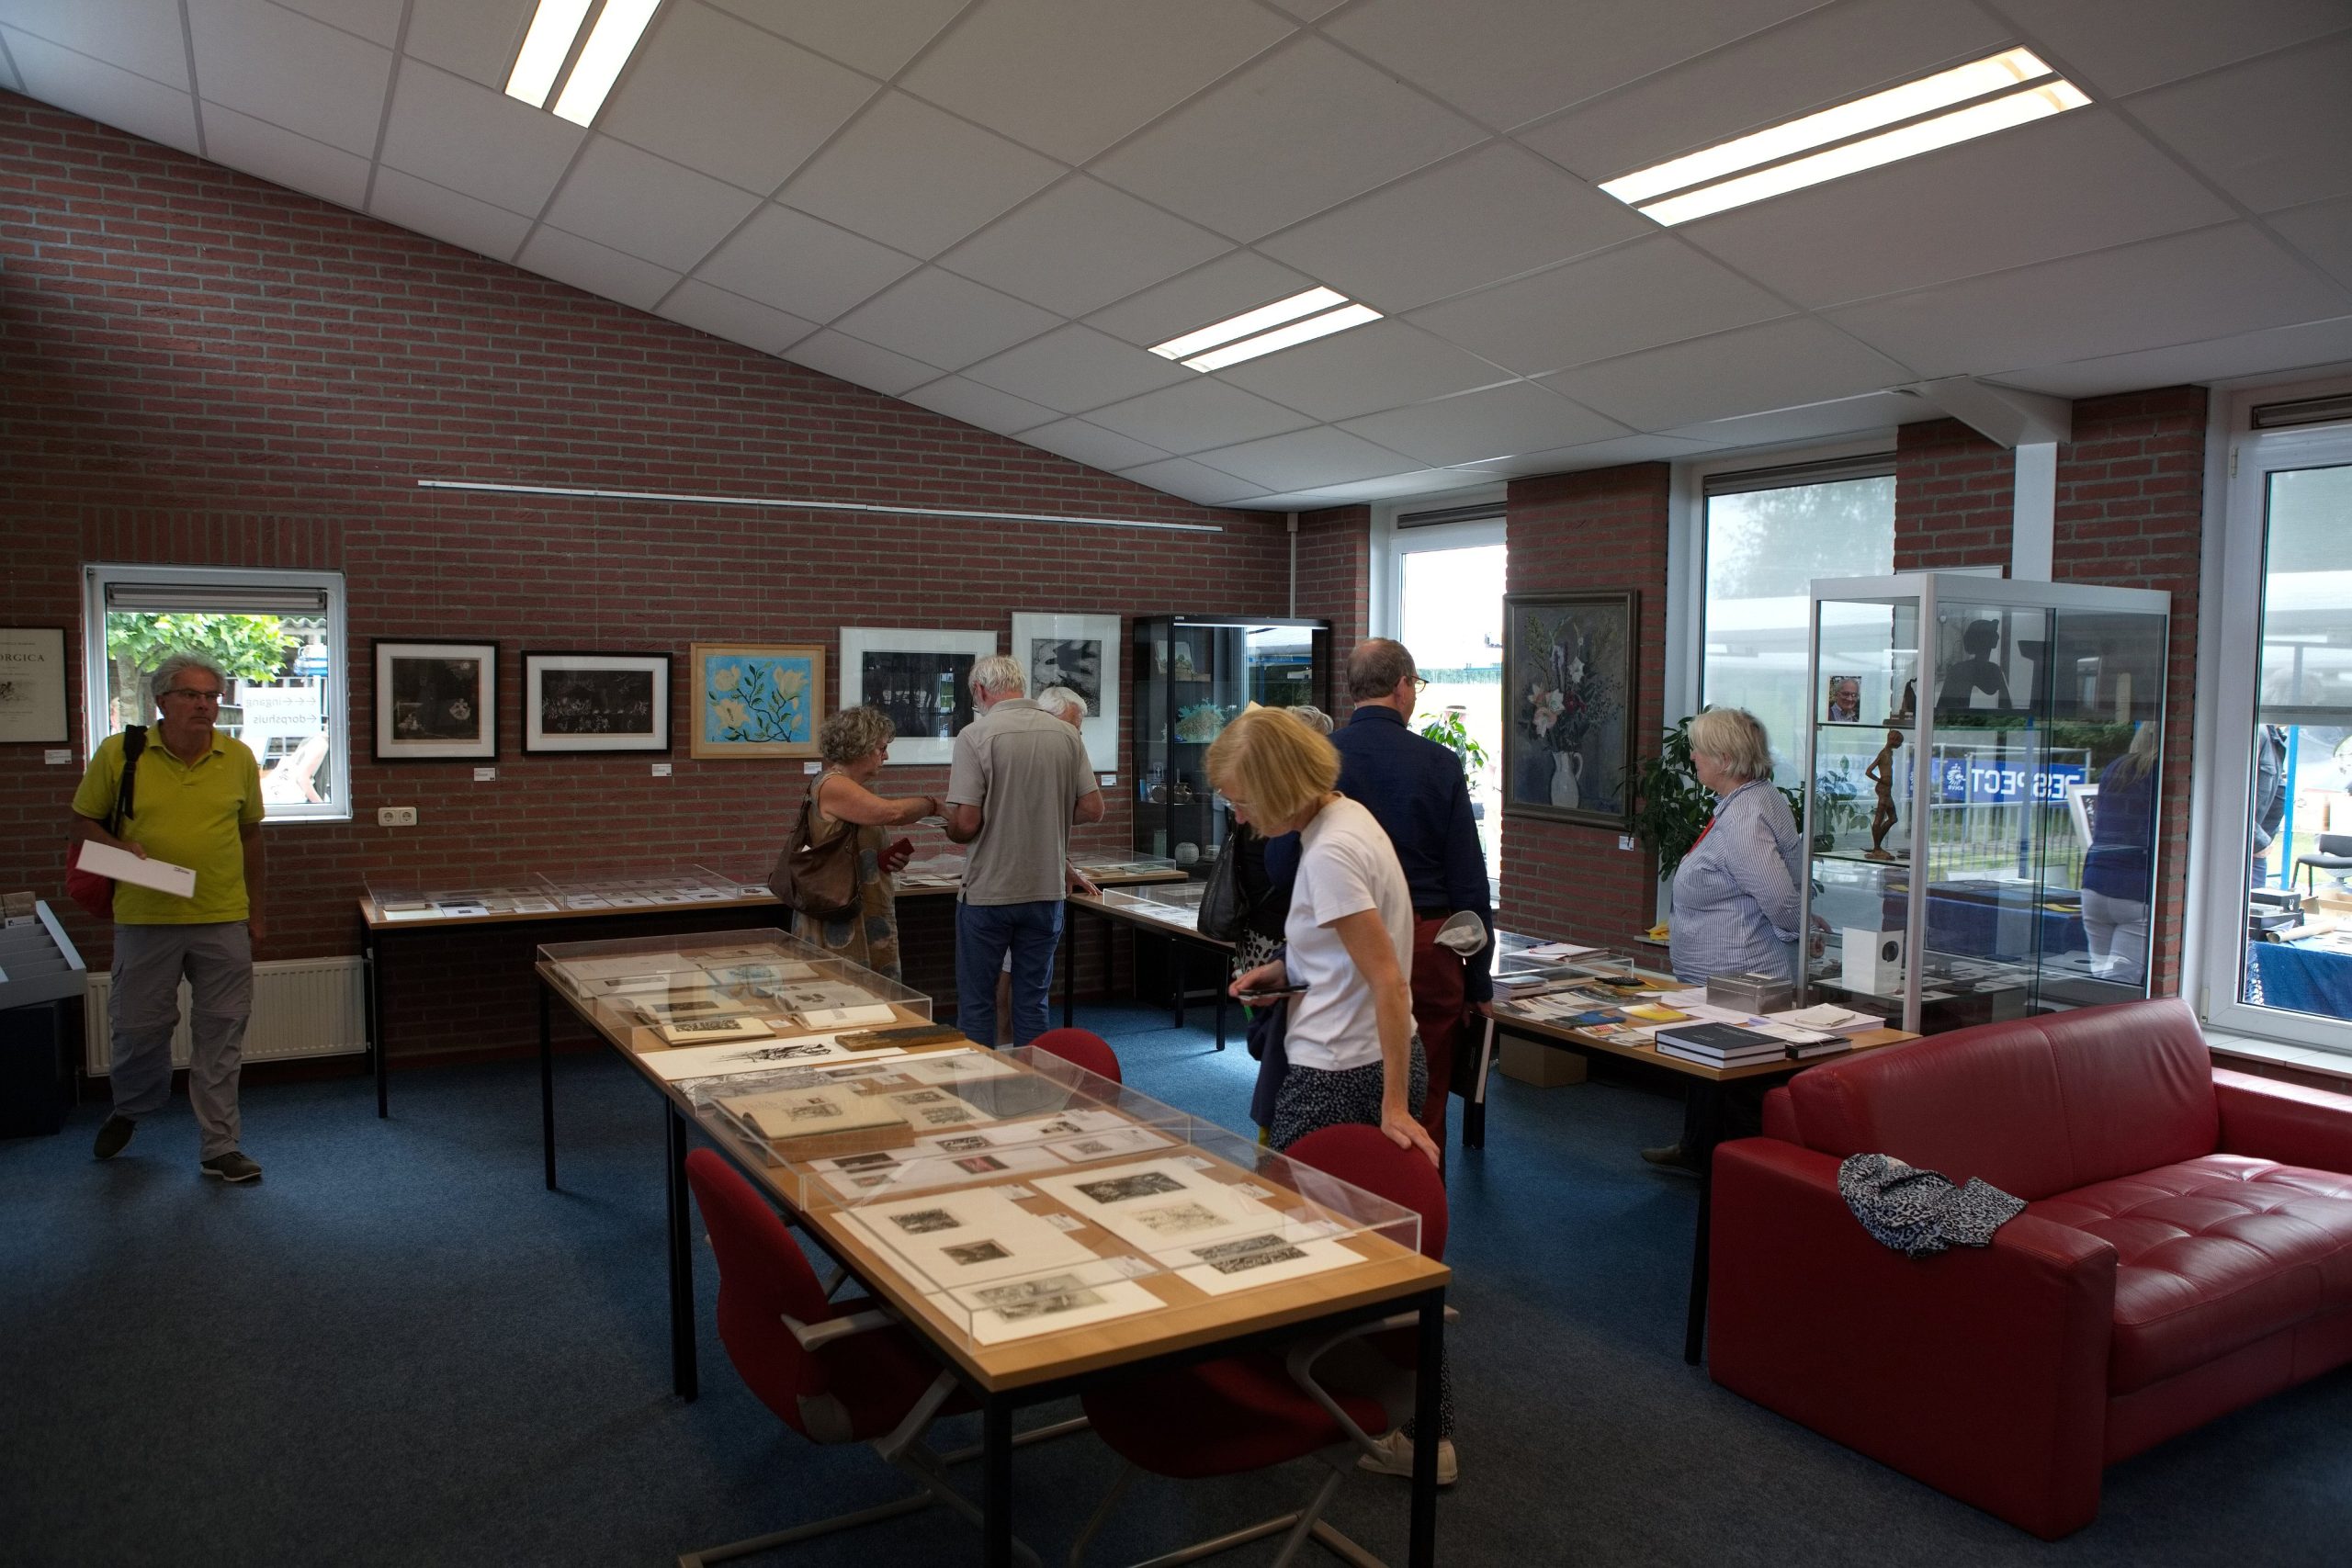 Overzicht van de tentoonstelling met werk van Jeanne Bieruma Oosting en tijdgenoten in de grote expositieruimte van Nobilis